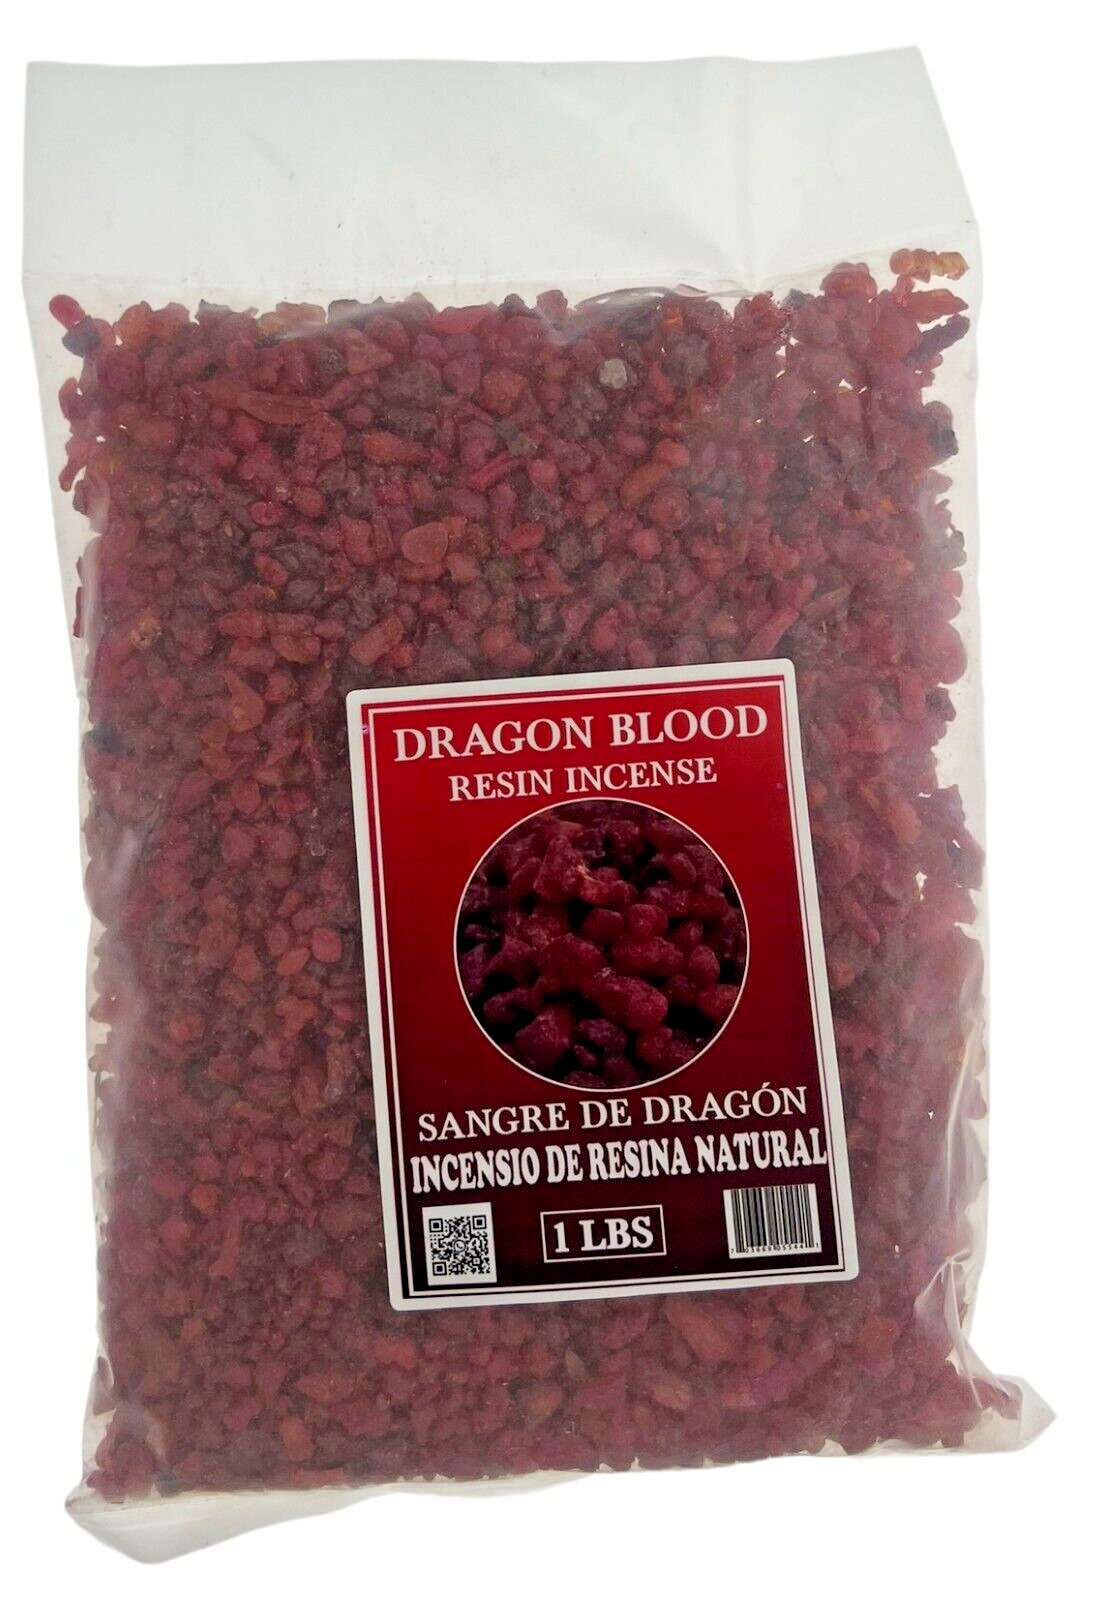 Dragon Blood Resin Incense 1 LBS Bag